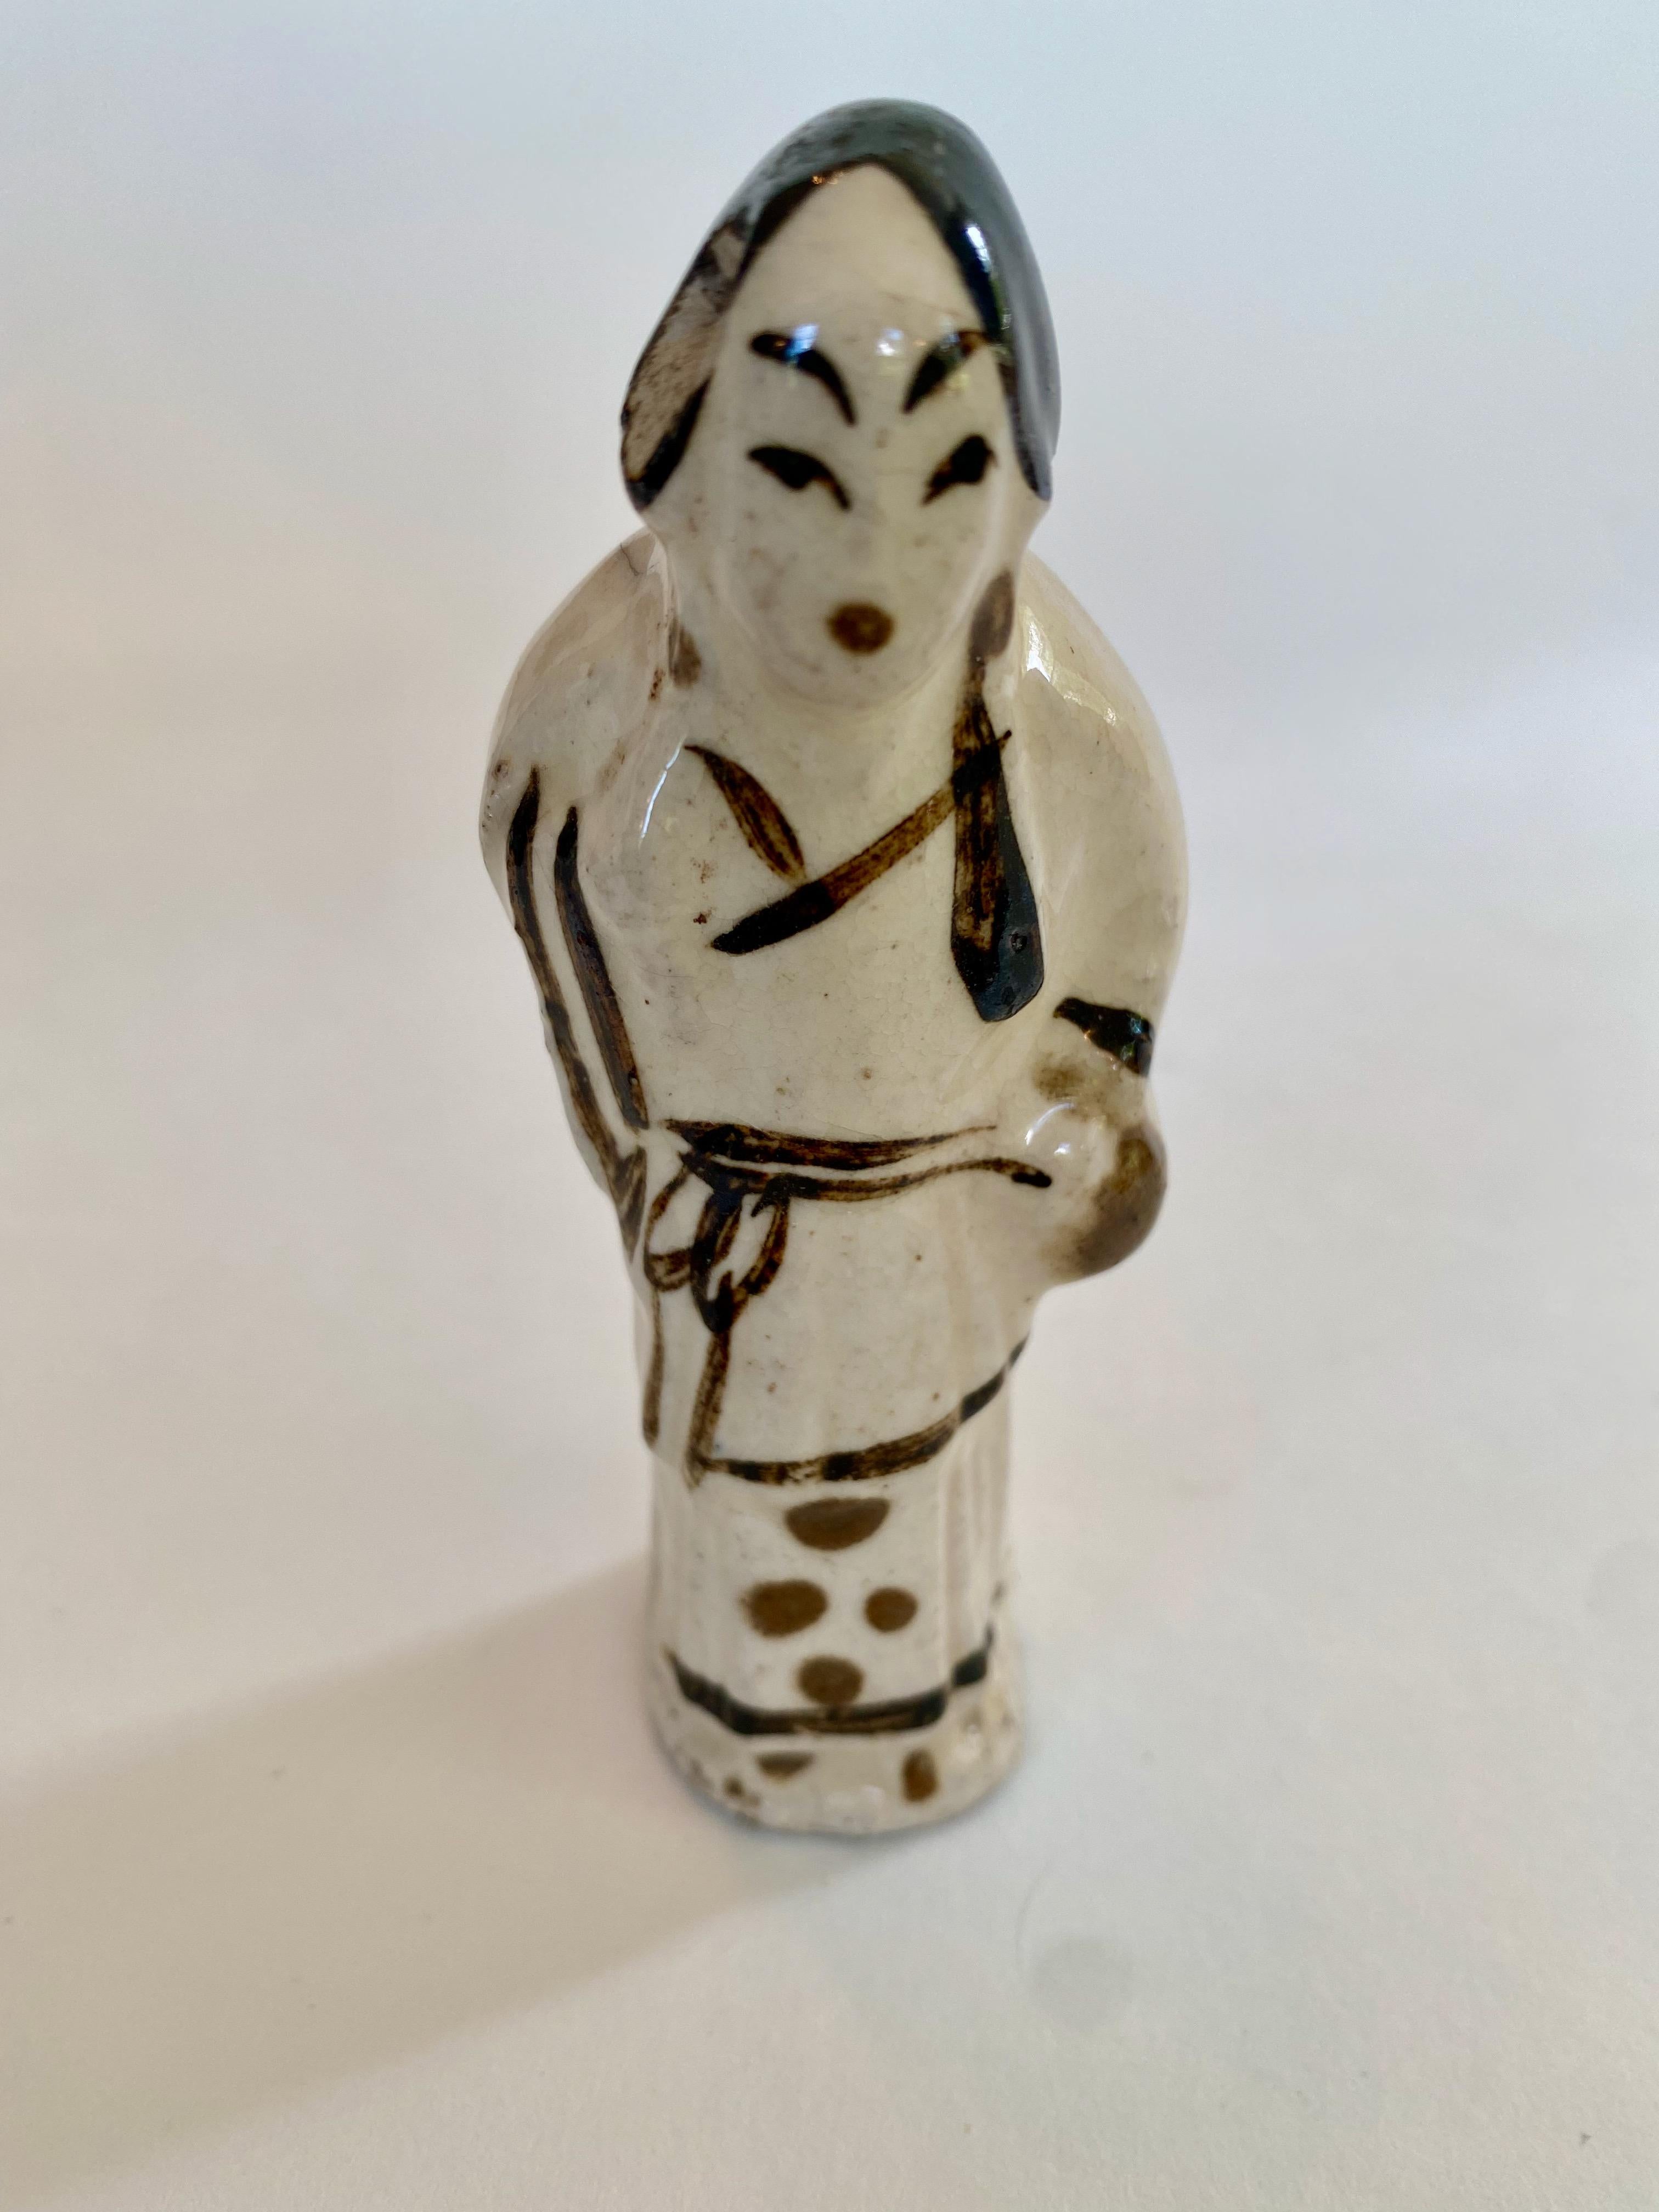 Figure en poterie de la dynastie Ming représentant une femme debout, probablement de la région de Suzhou.
Il s'agit d'une petite figurine avec beaucoup de personnalité, rendue en crème et en brun foncé. Avec sa posture légèrement voûtée et ses mains